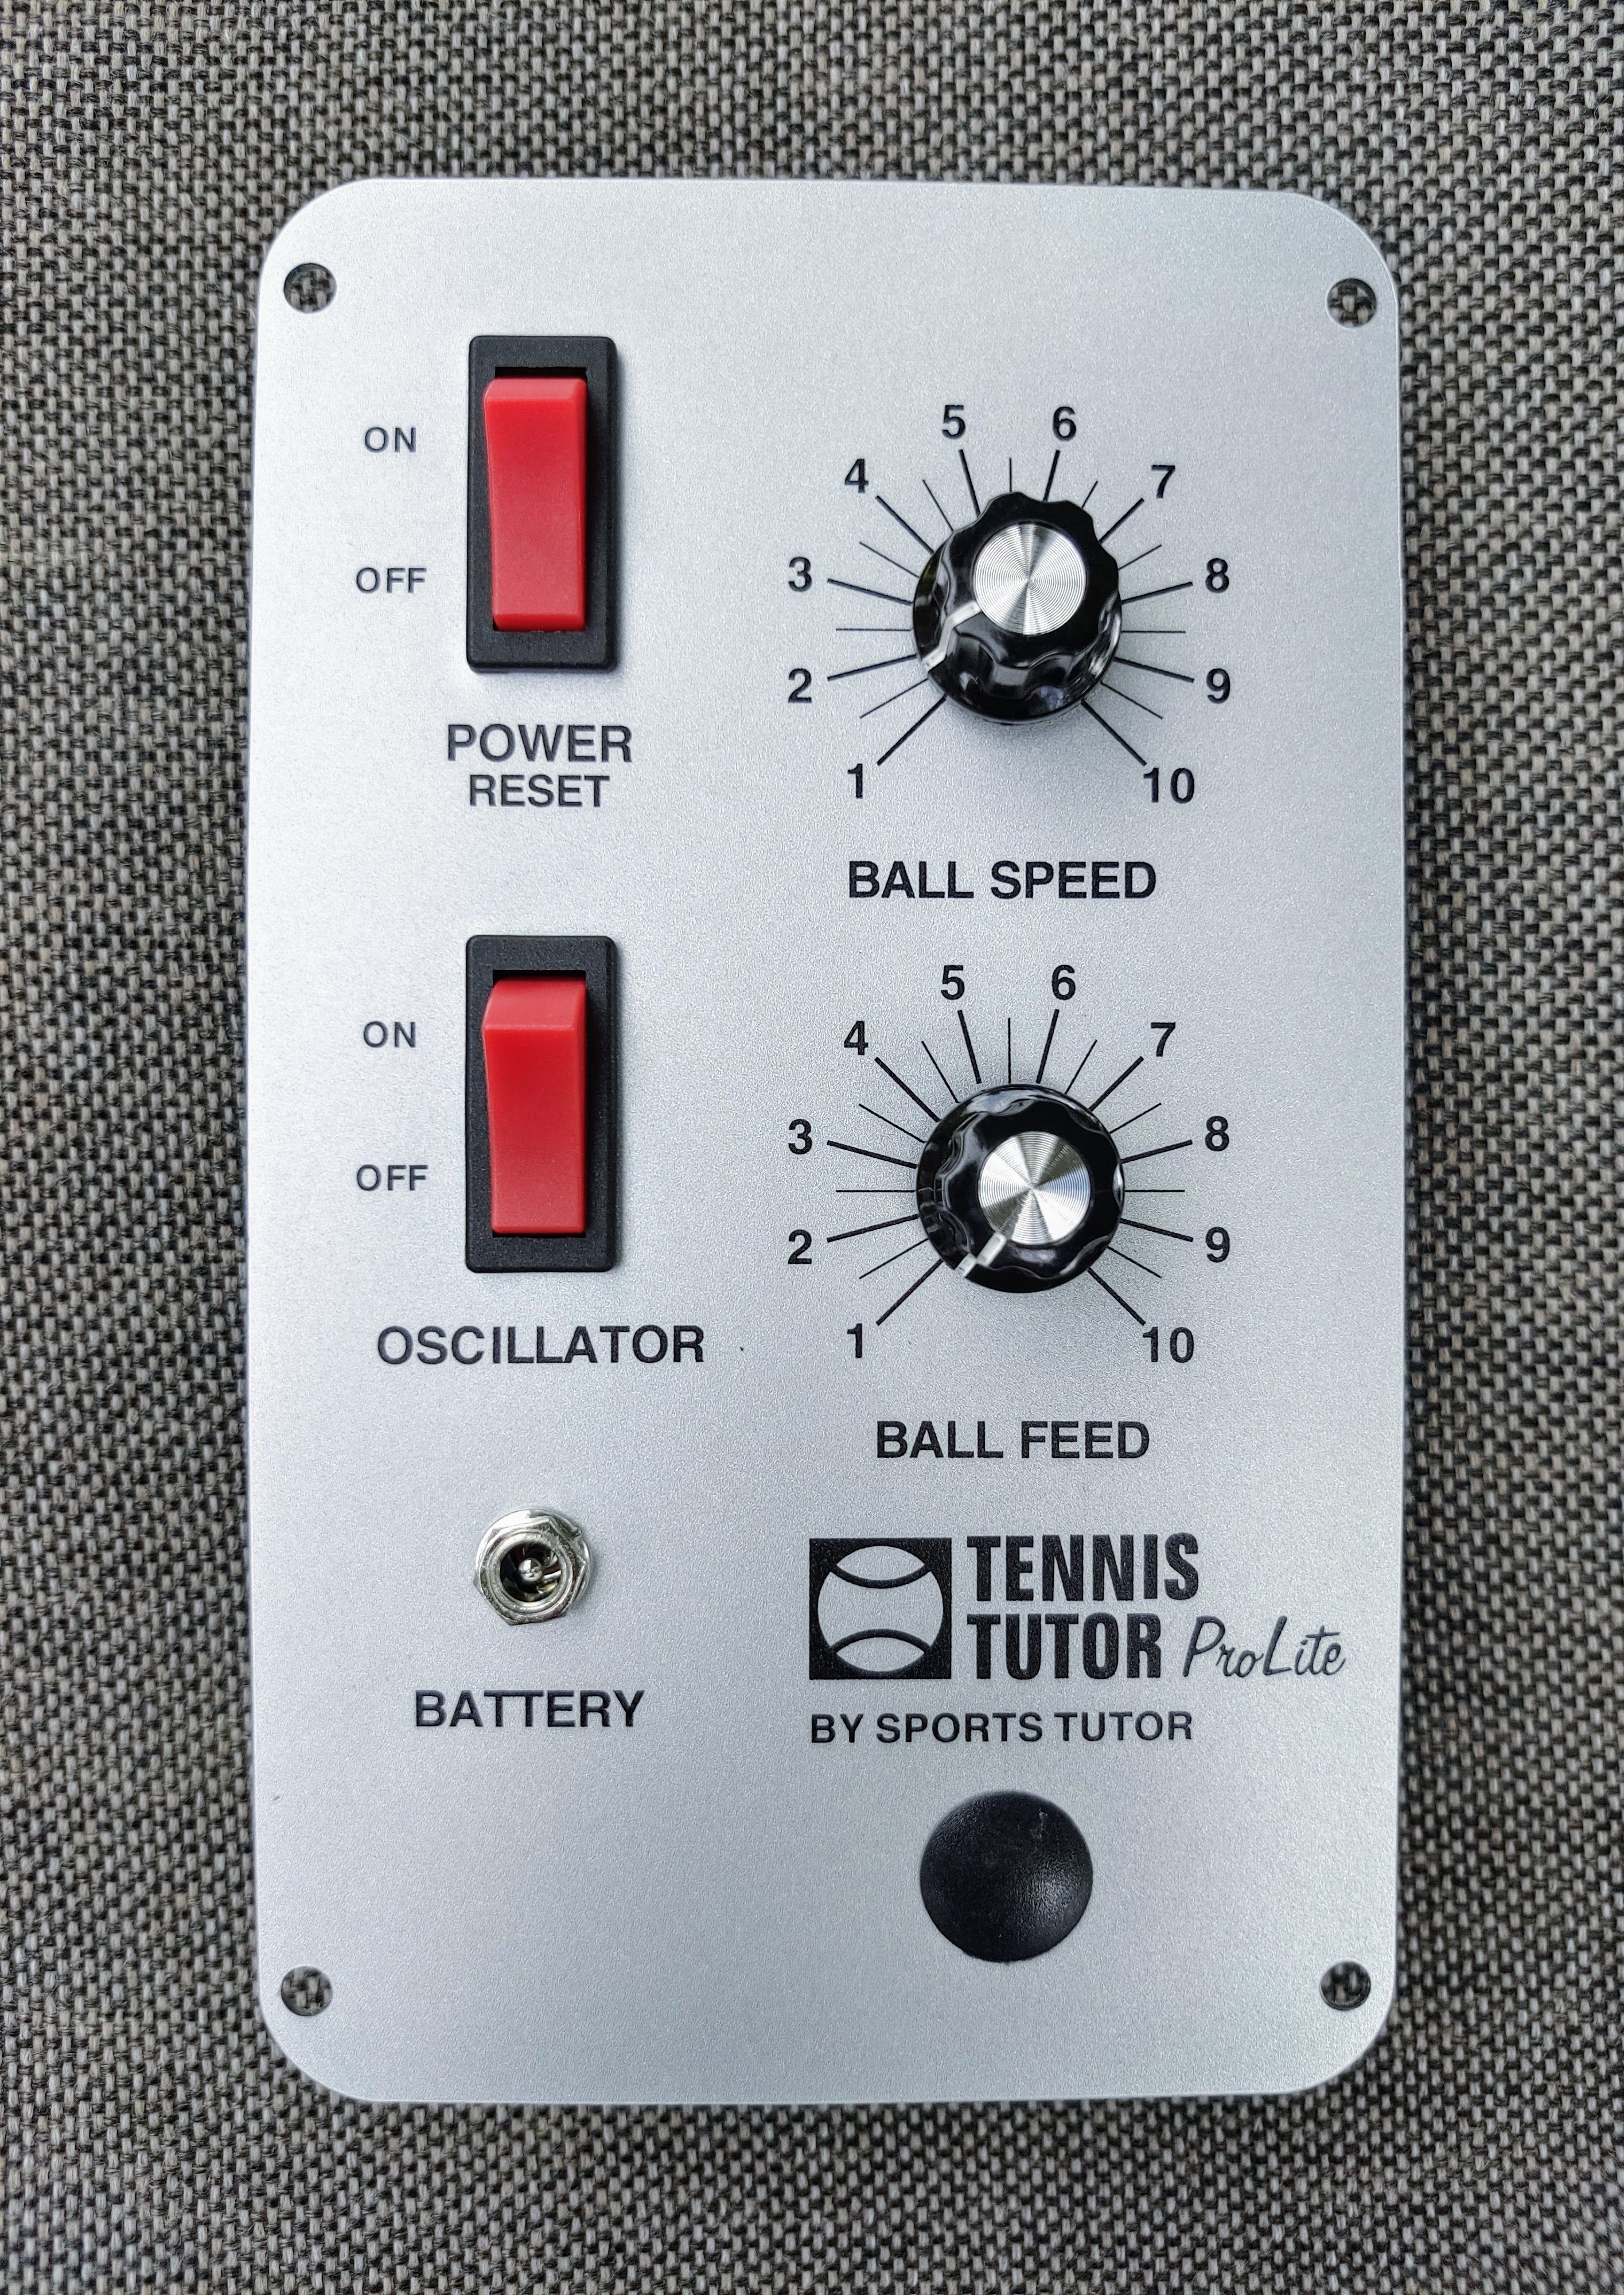 Ballmachine Accessories: Tutor ProLIte Control Panel w/o remote control